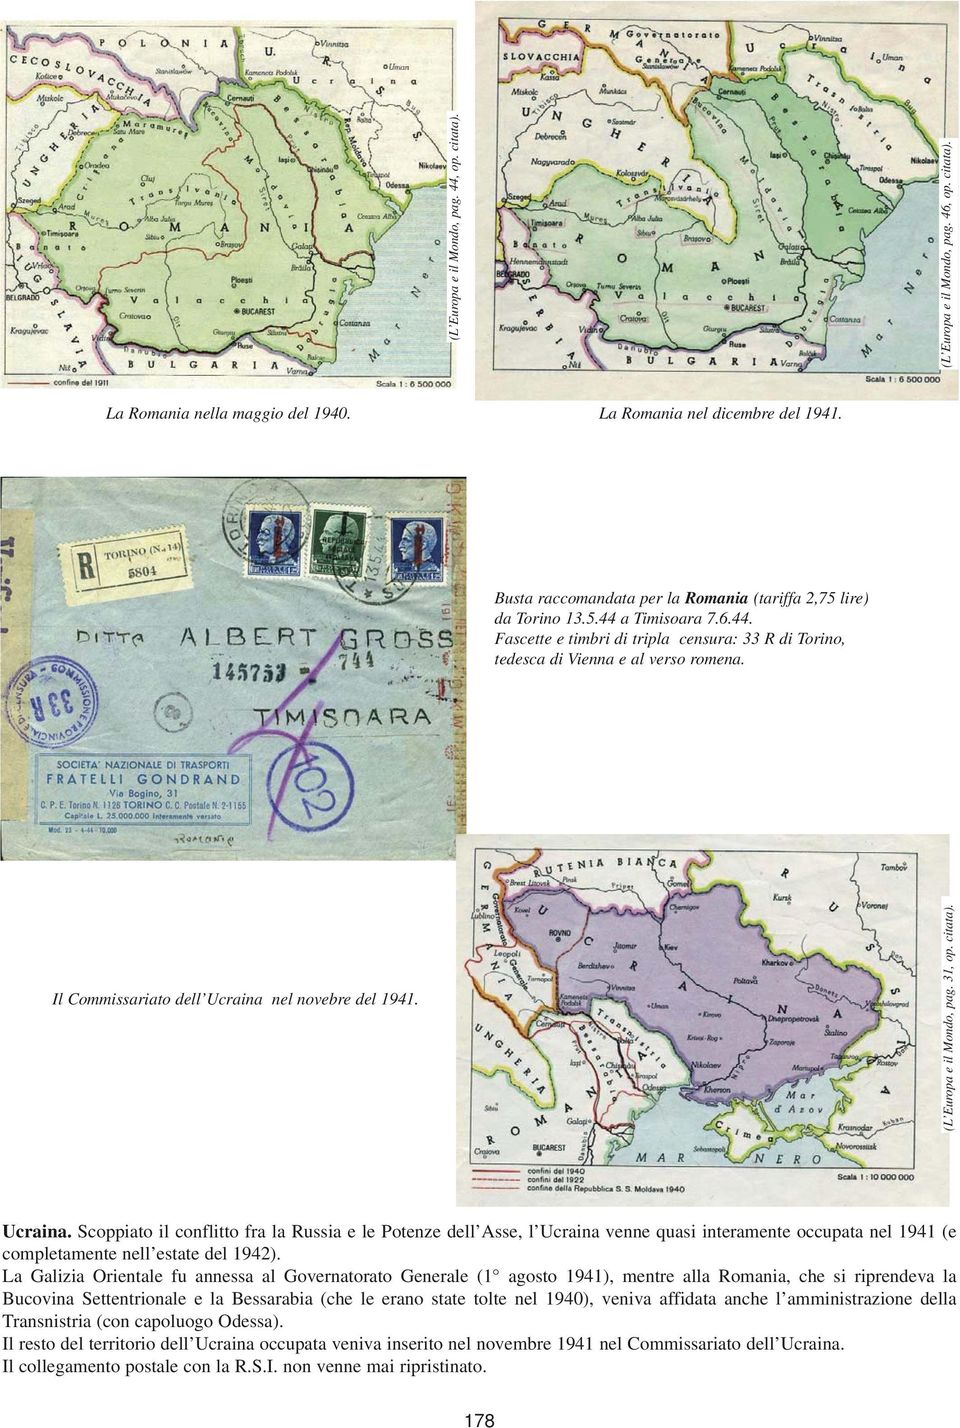 Il Commissariato dell Ucraina nel novebre del 1941. (L Europa e il Mondo, pag. 31, op. citata). Ucraina. Scoppiato il conflitto fra la Russia e le Potenze dell Asse, l Ucraina venne quasi interamente occupata nel 1941 (e completamente nell estate del 1942).